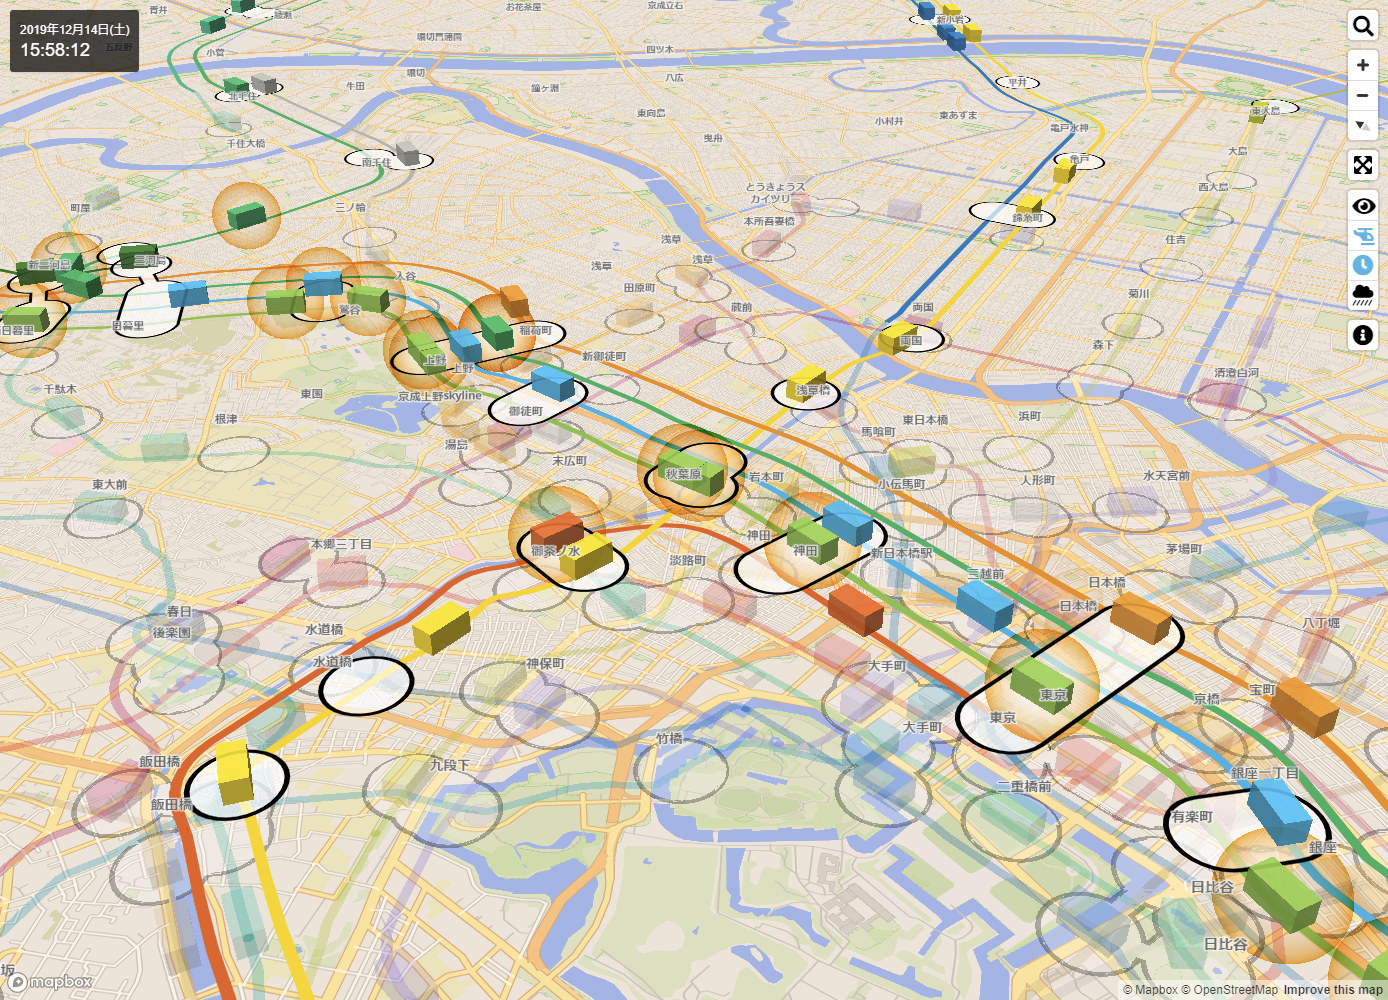 都内の鉄道の 動き を3d地図上にリアルタイムに再現 Mini Tokyo 3d はいかにして作られたのか 開発者 草薙昭彦氏が語る 地図とデザイン Internet Watch